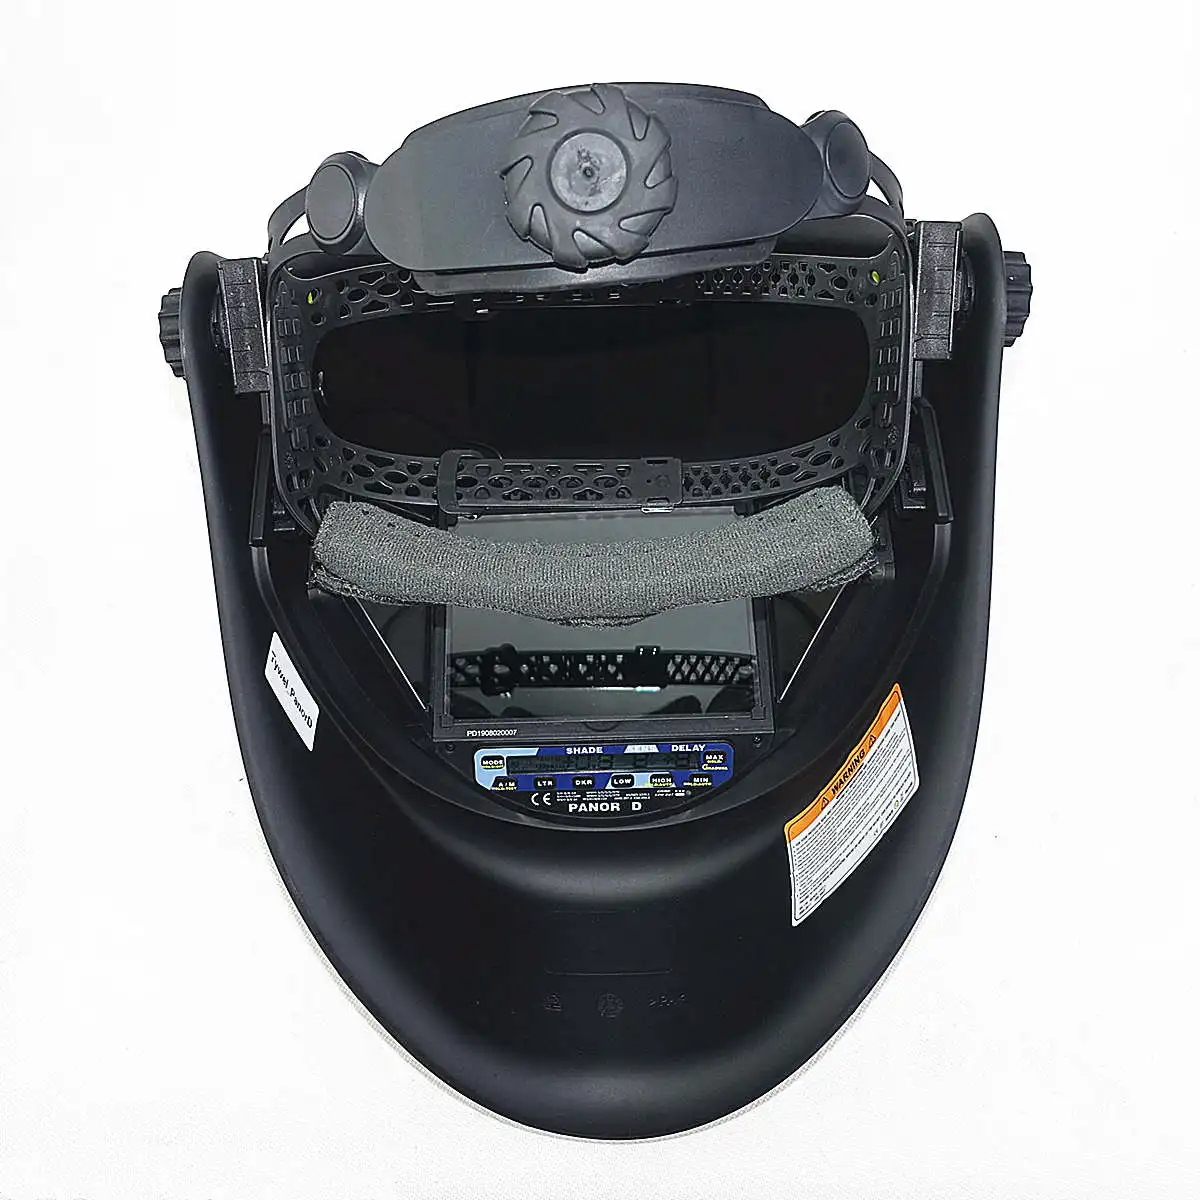 Сварочная маска с автоматическим затемнением 3 фильтра размер обзора 115x85 мм DIN 4-14 оптический 1111 5 датчиков CE ANSI CSA AS/NZS сварочный шлем